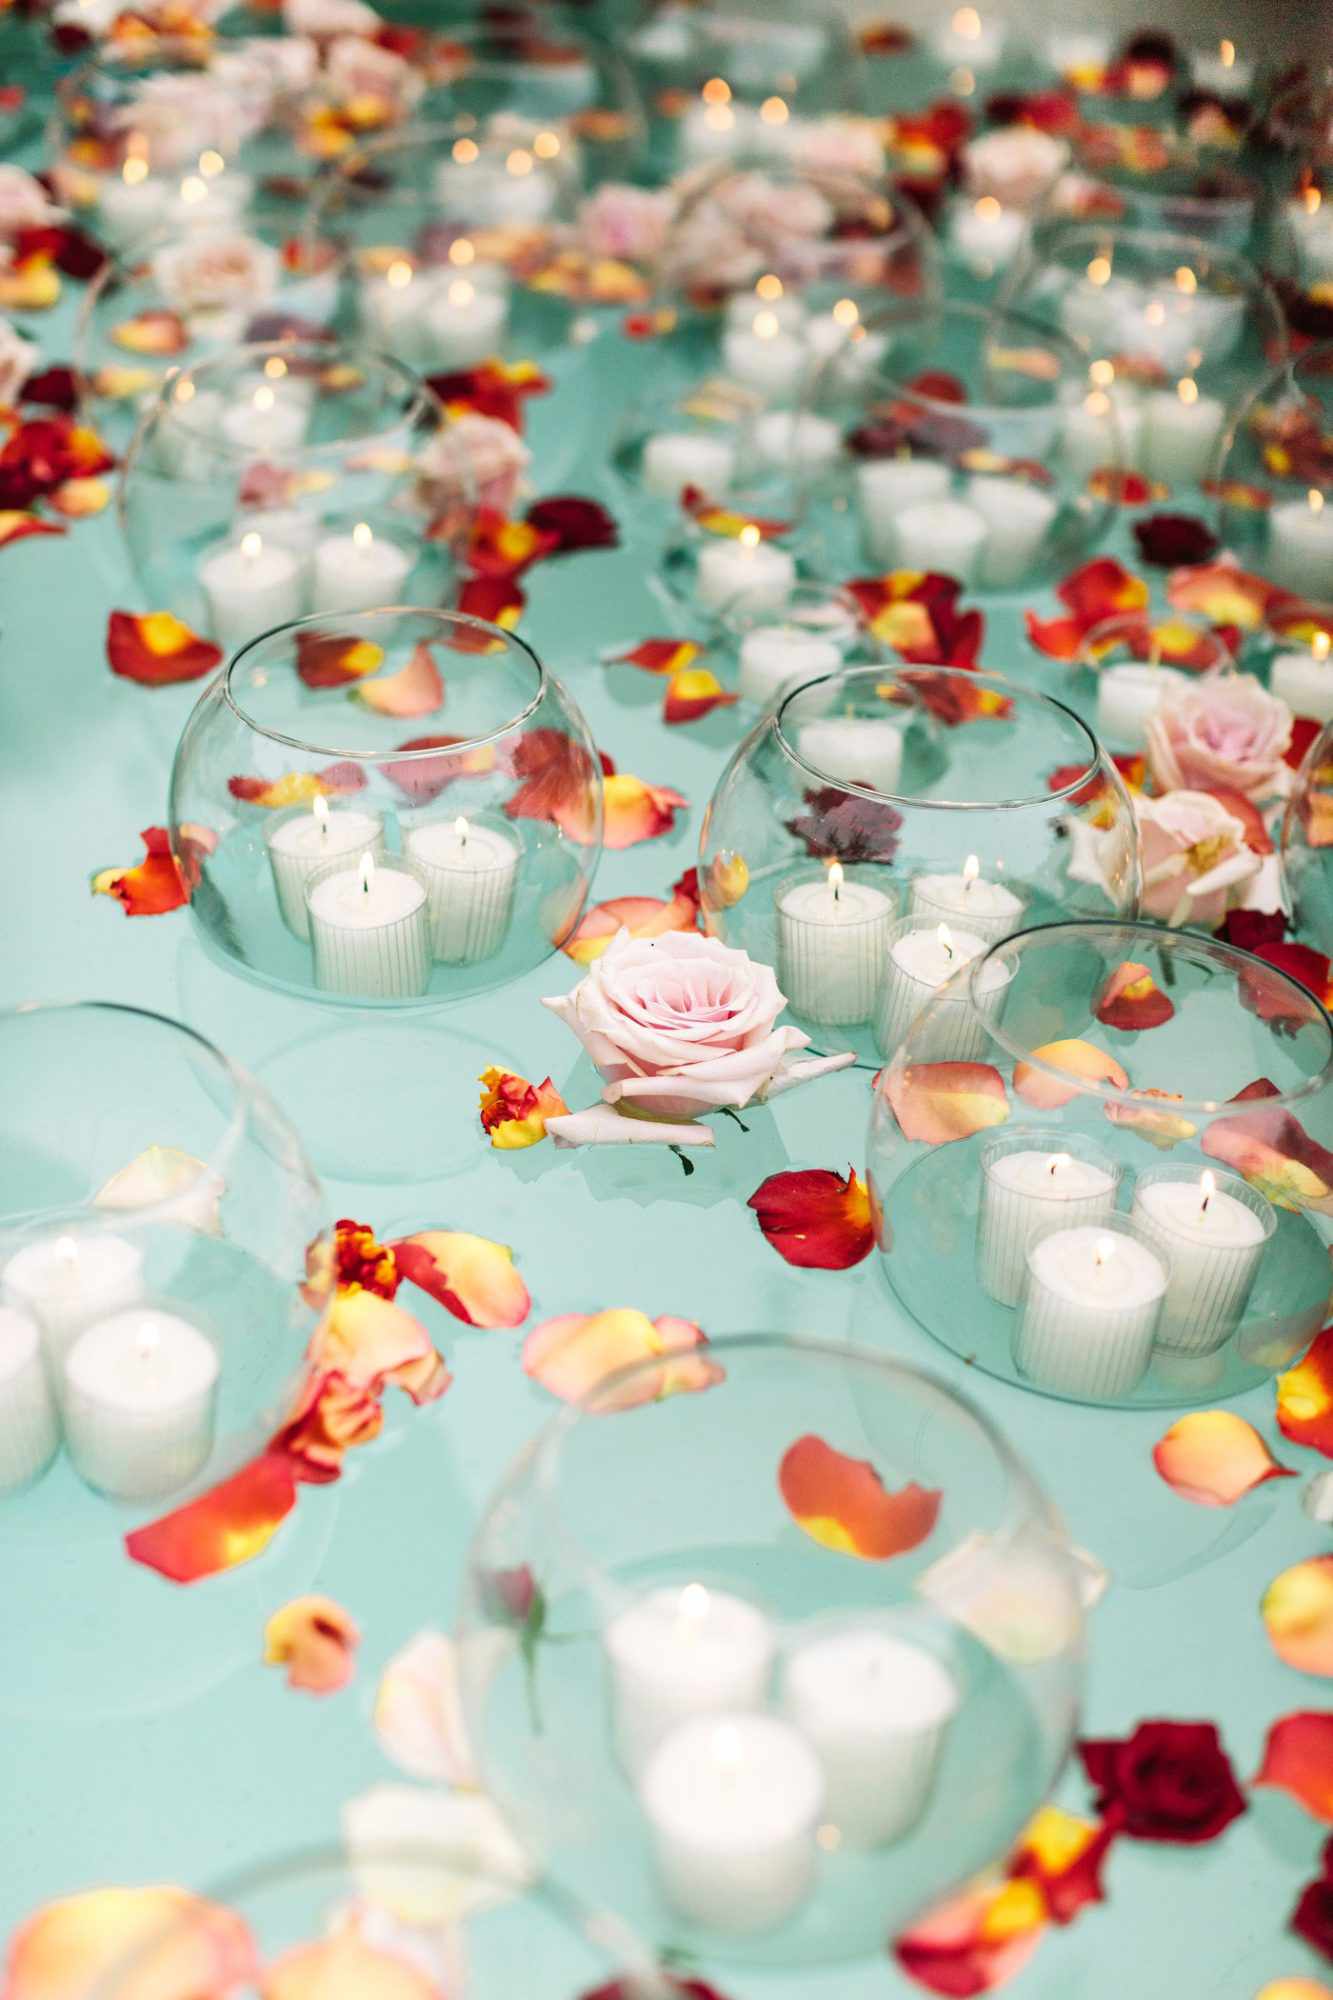 regina chris wedding floating petals candles